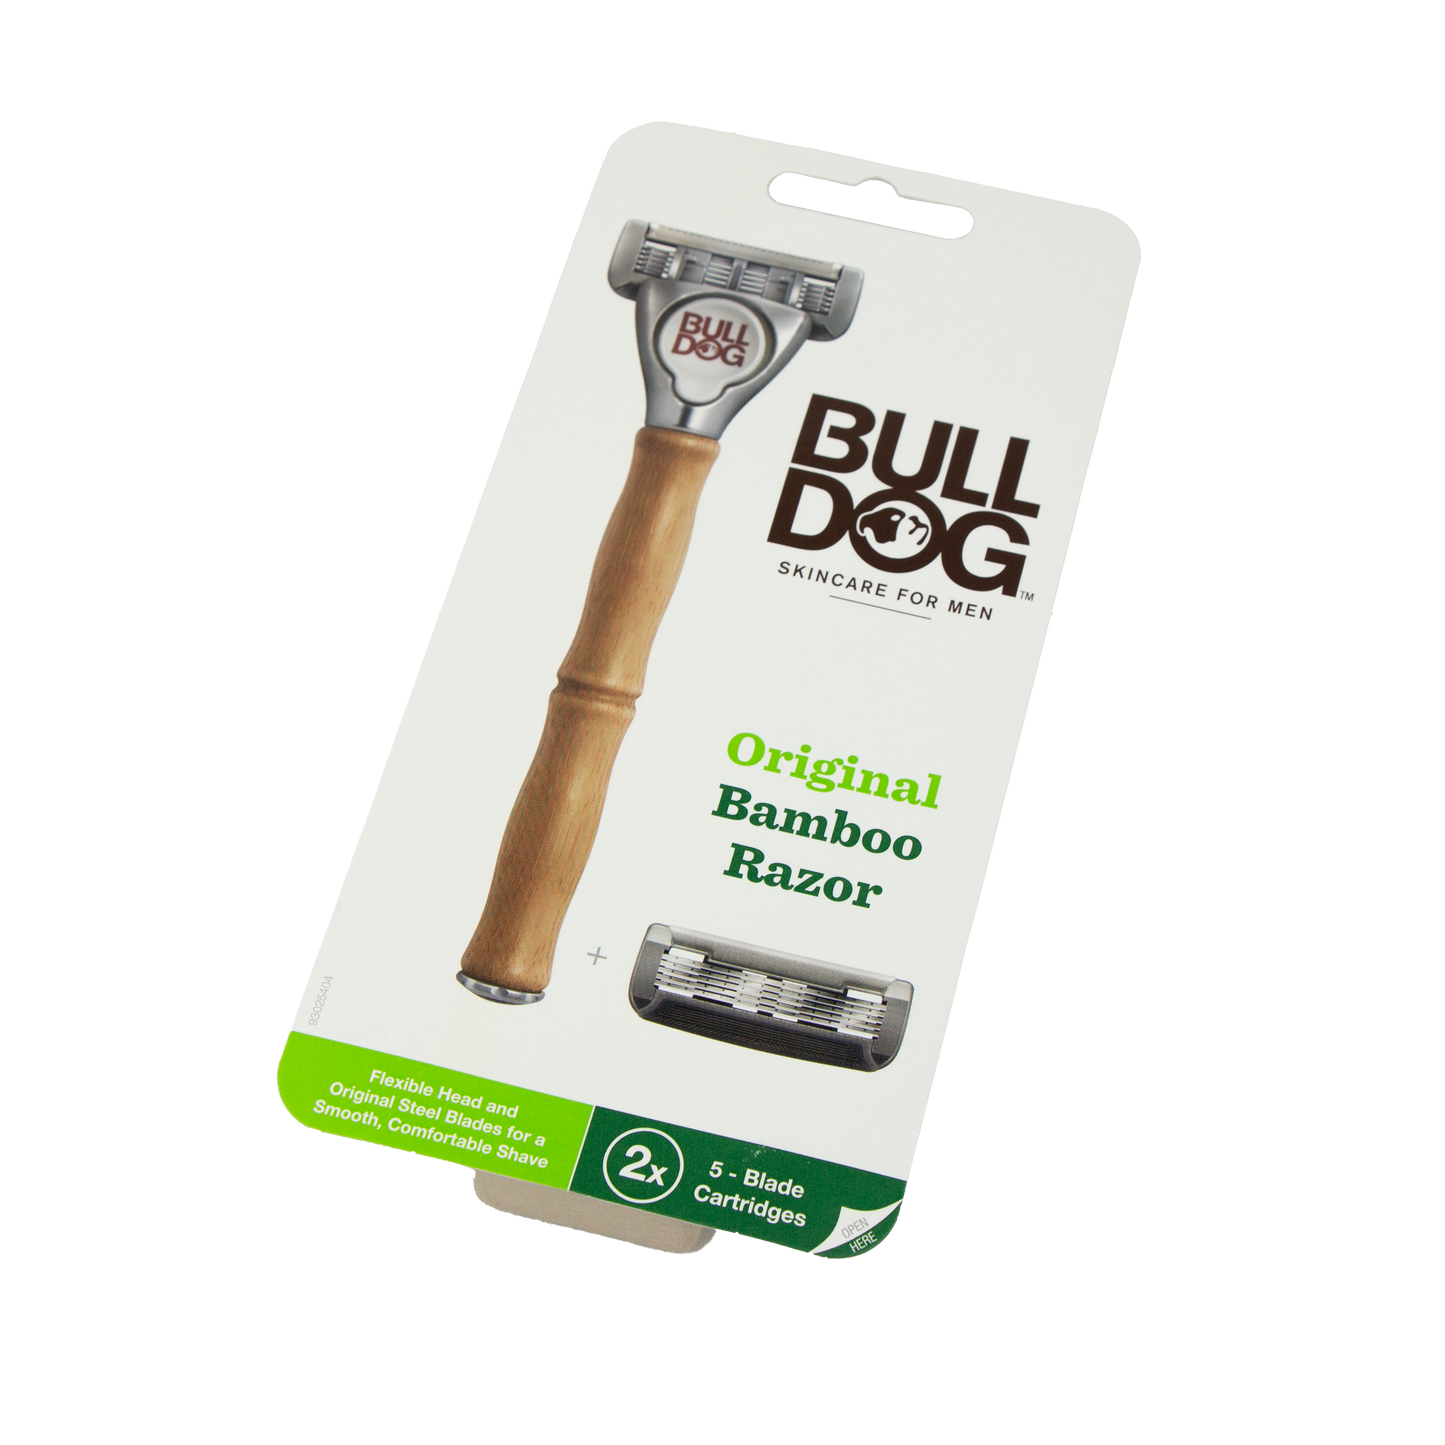 Bulldog - Original Bamboo Razor